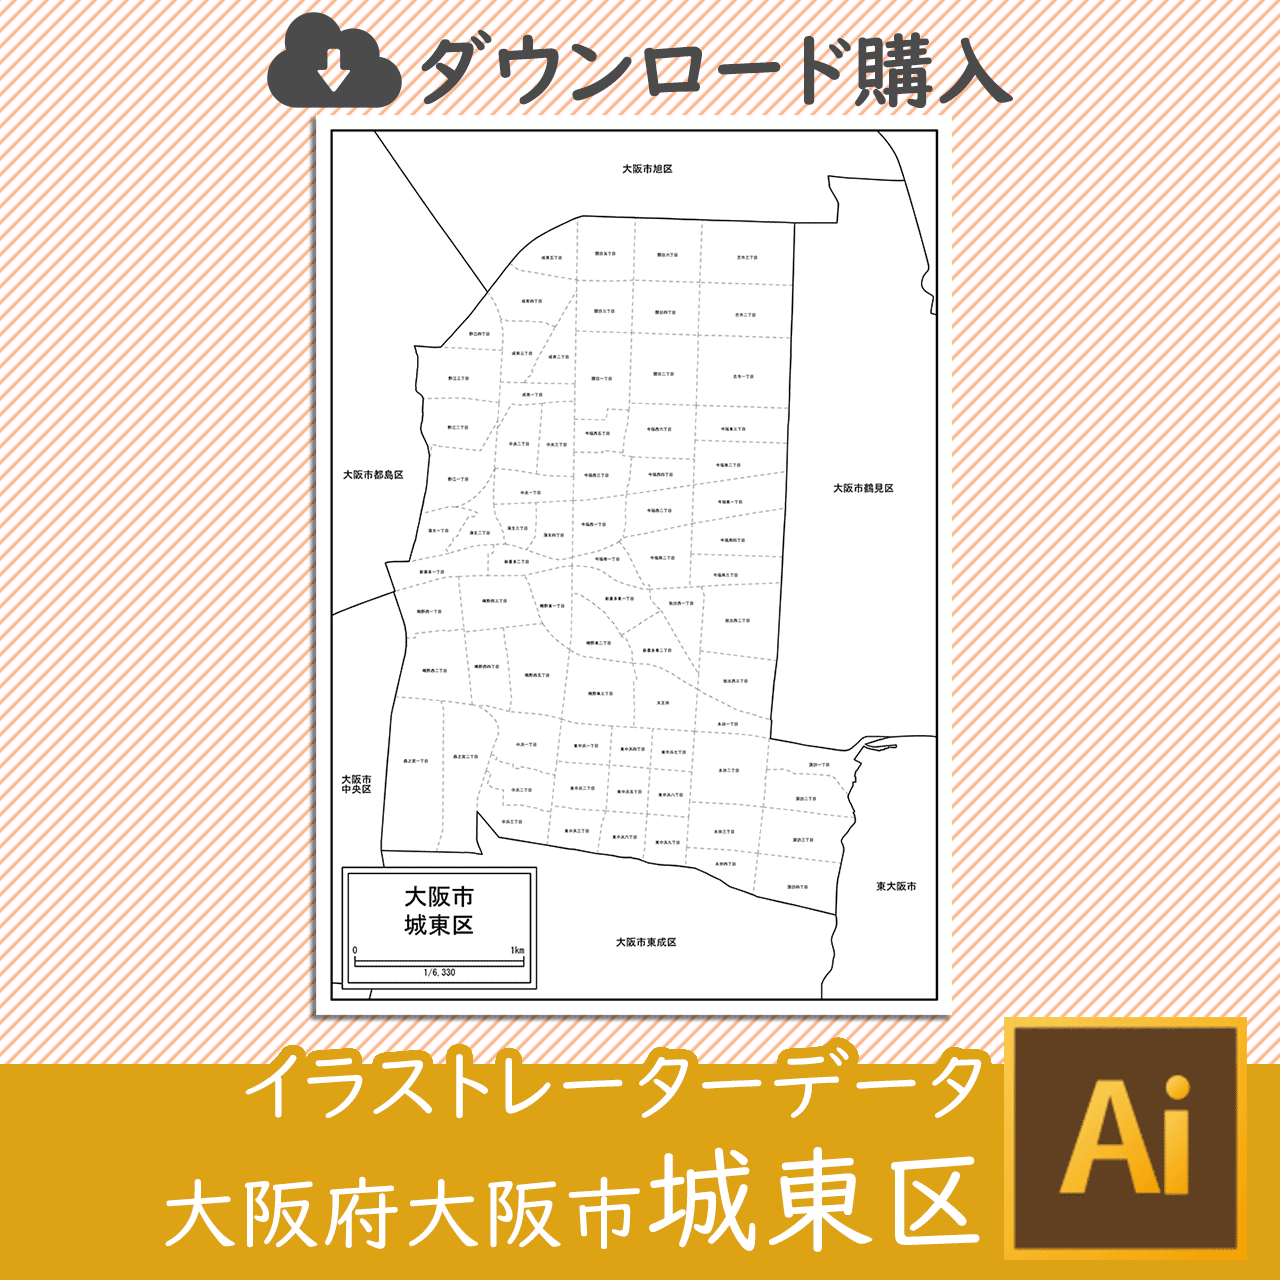 大阪市城東区のaiデータのサムネイル画像